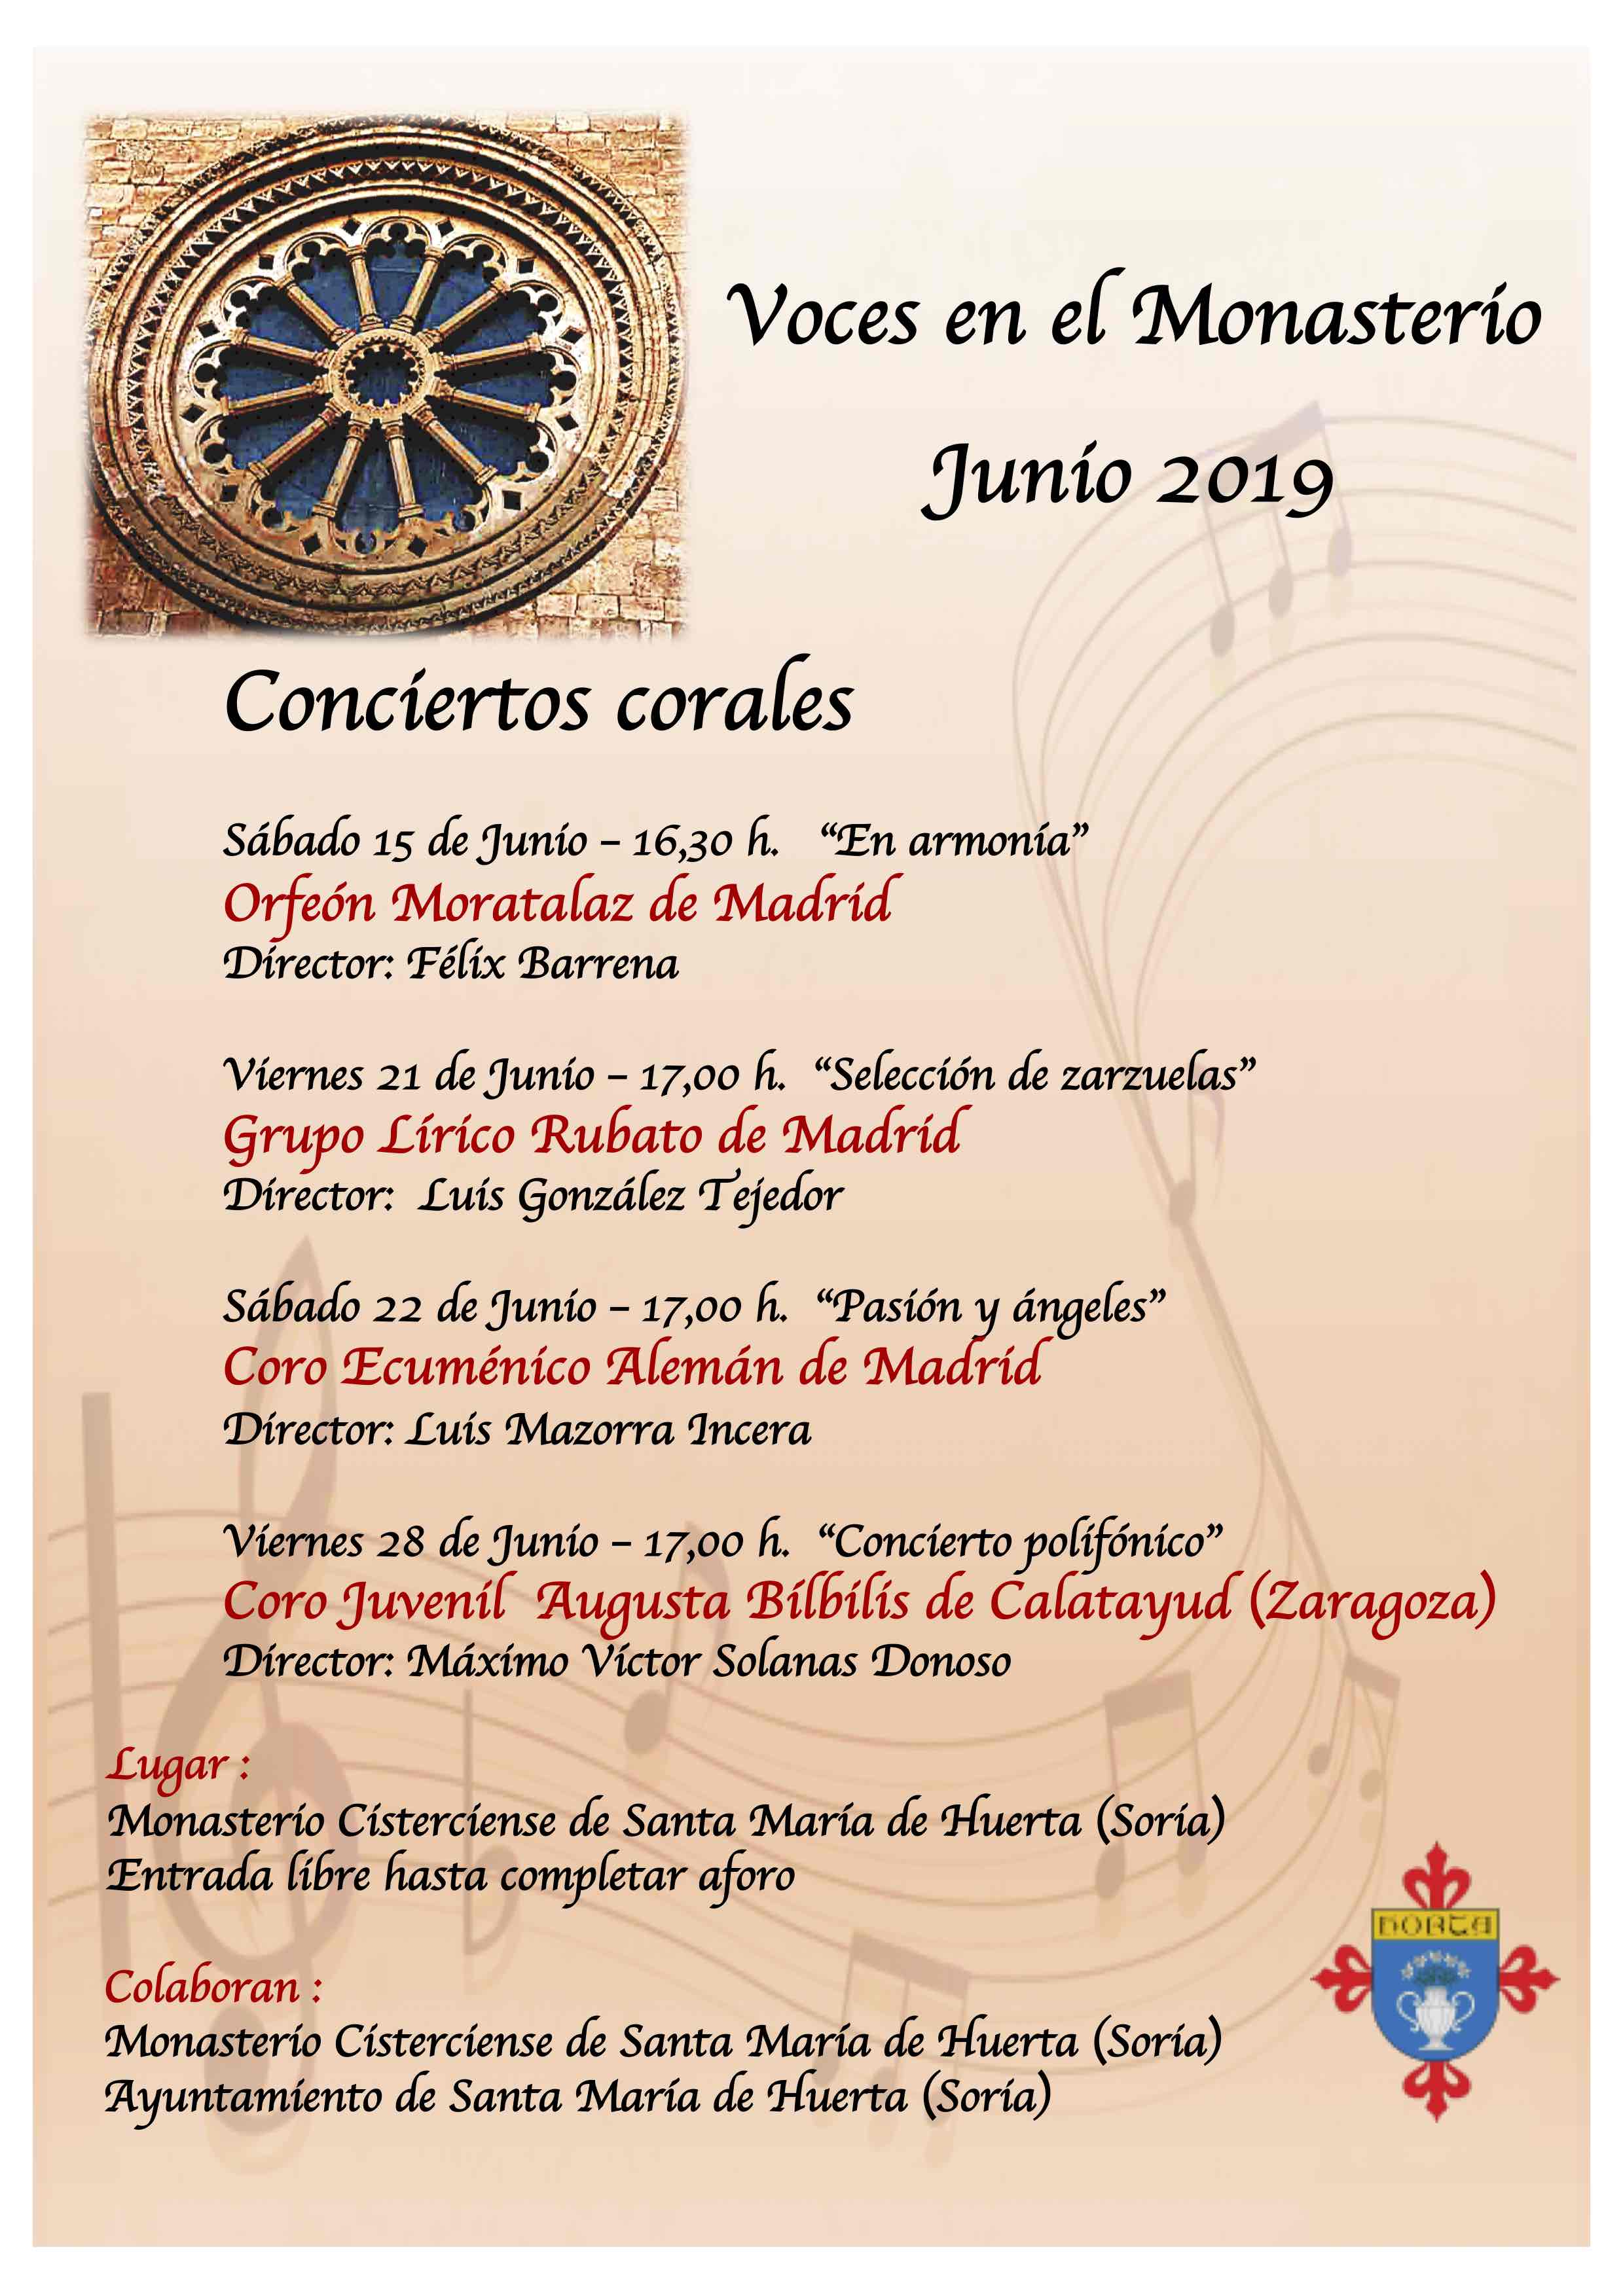 2019-06 Conciertos corales en el Monasterio Cisterciense de Santa María de Huerta